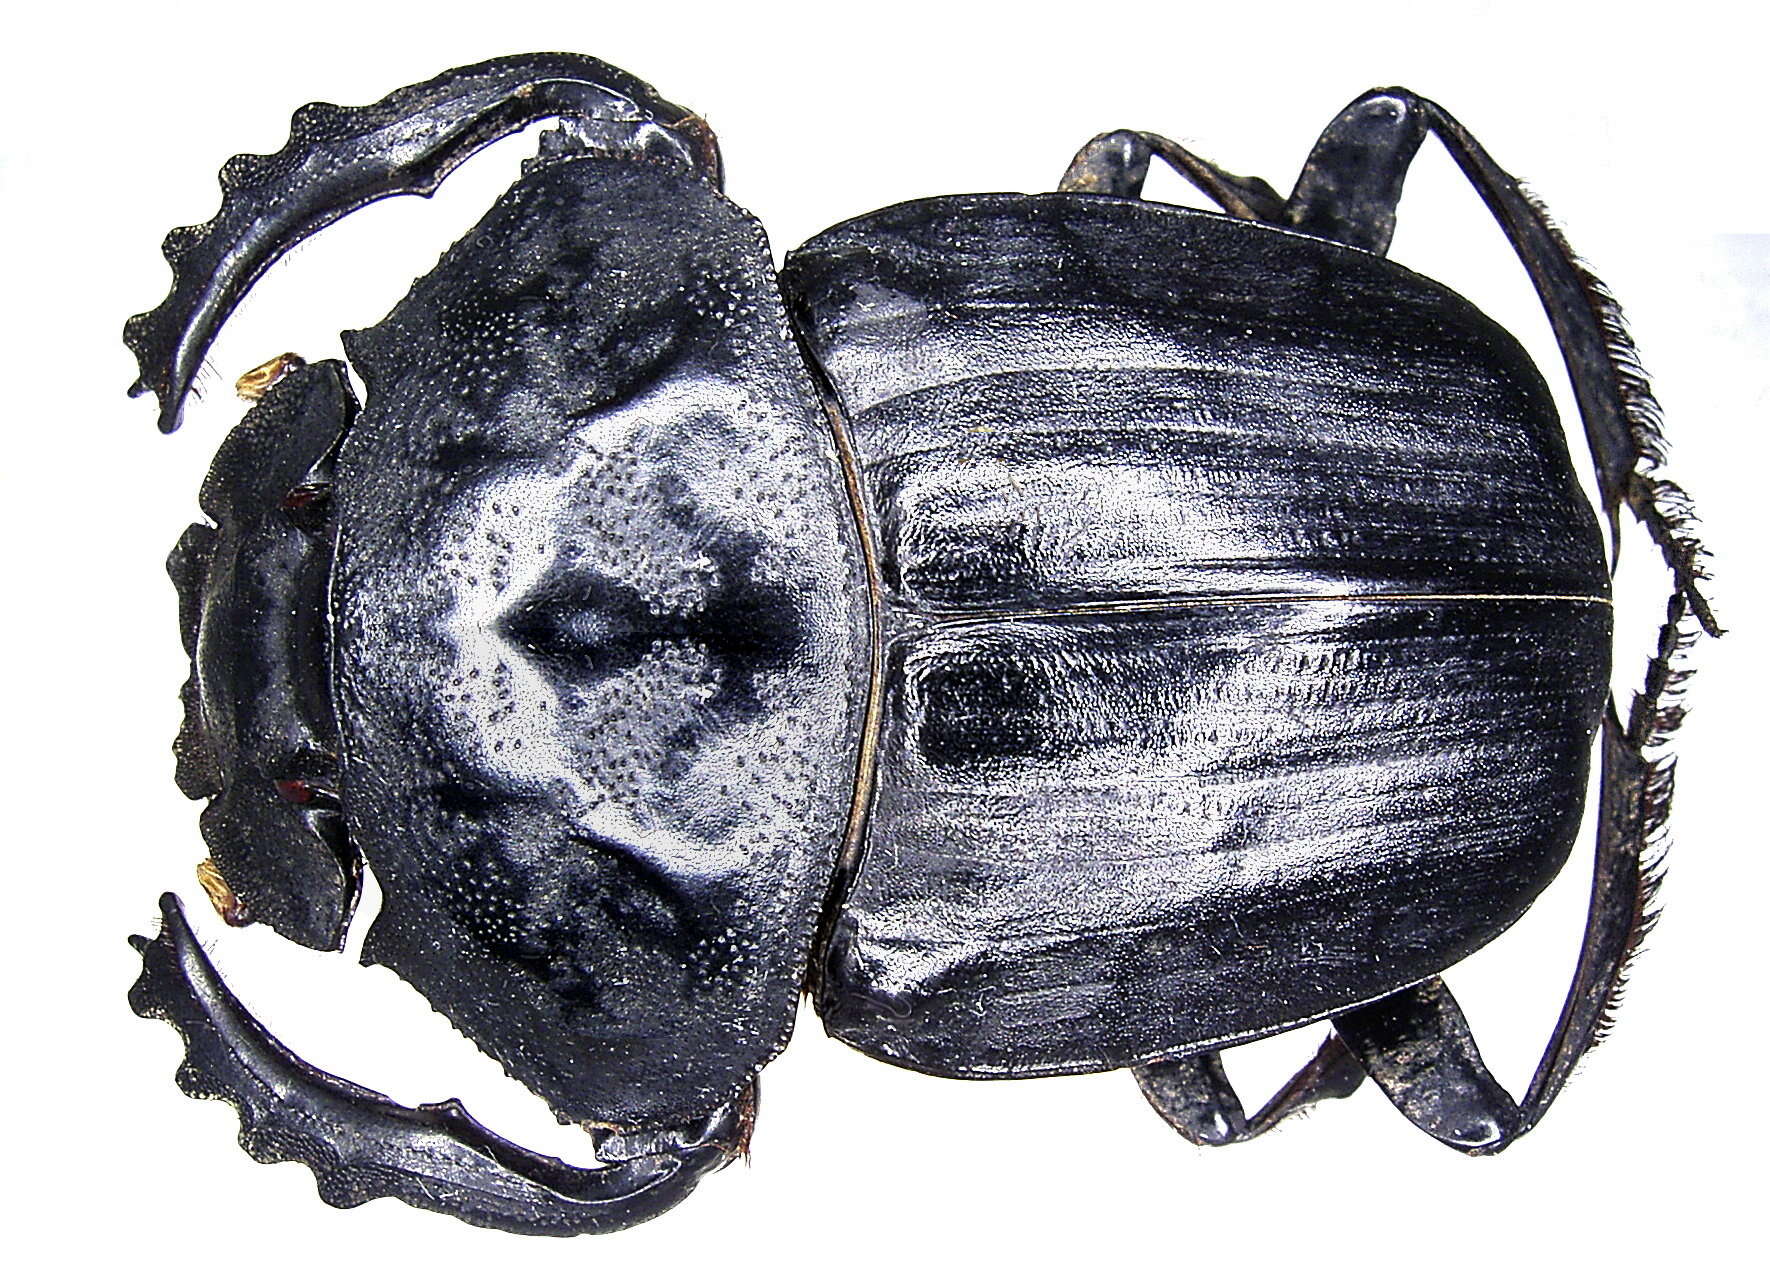 Image of Pachylomera